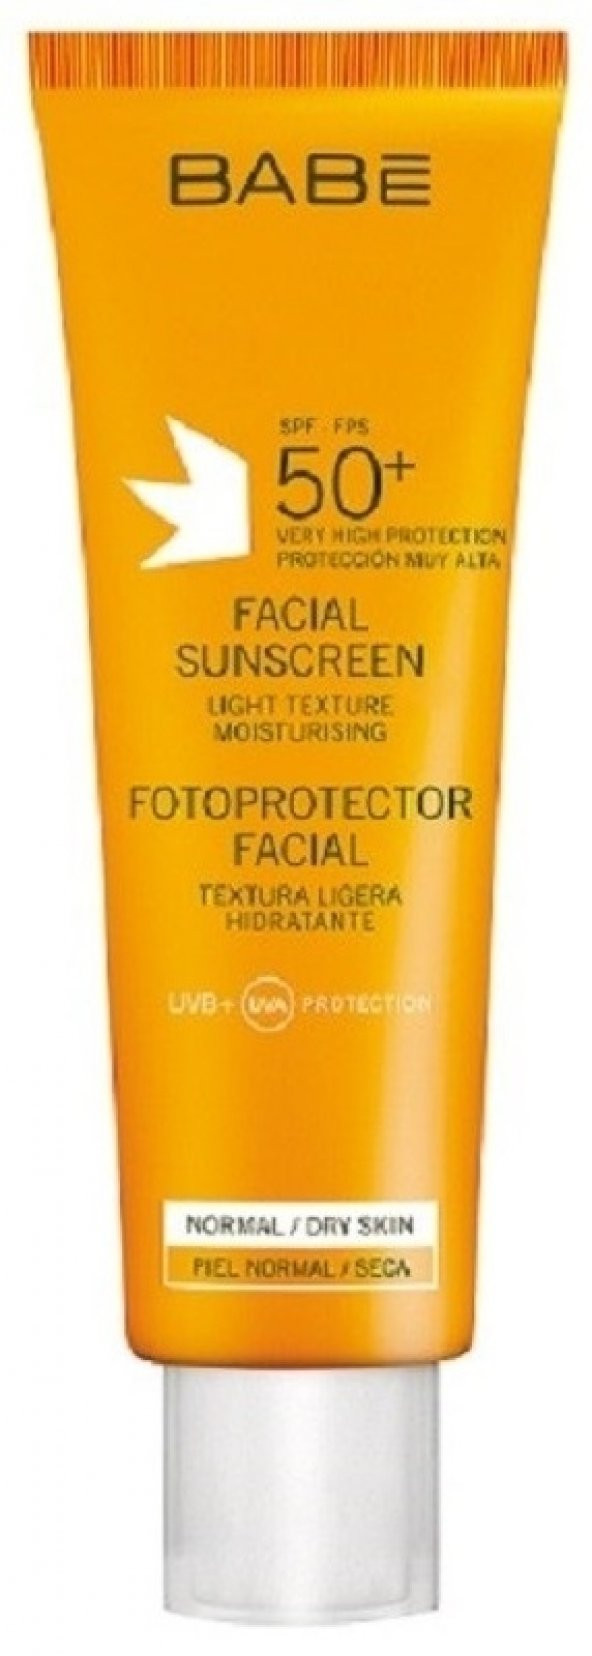 Babe Facıal Sunscreen 50 Lıght Texture 50 Ml skt:11/2019